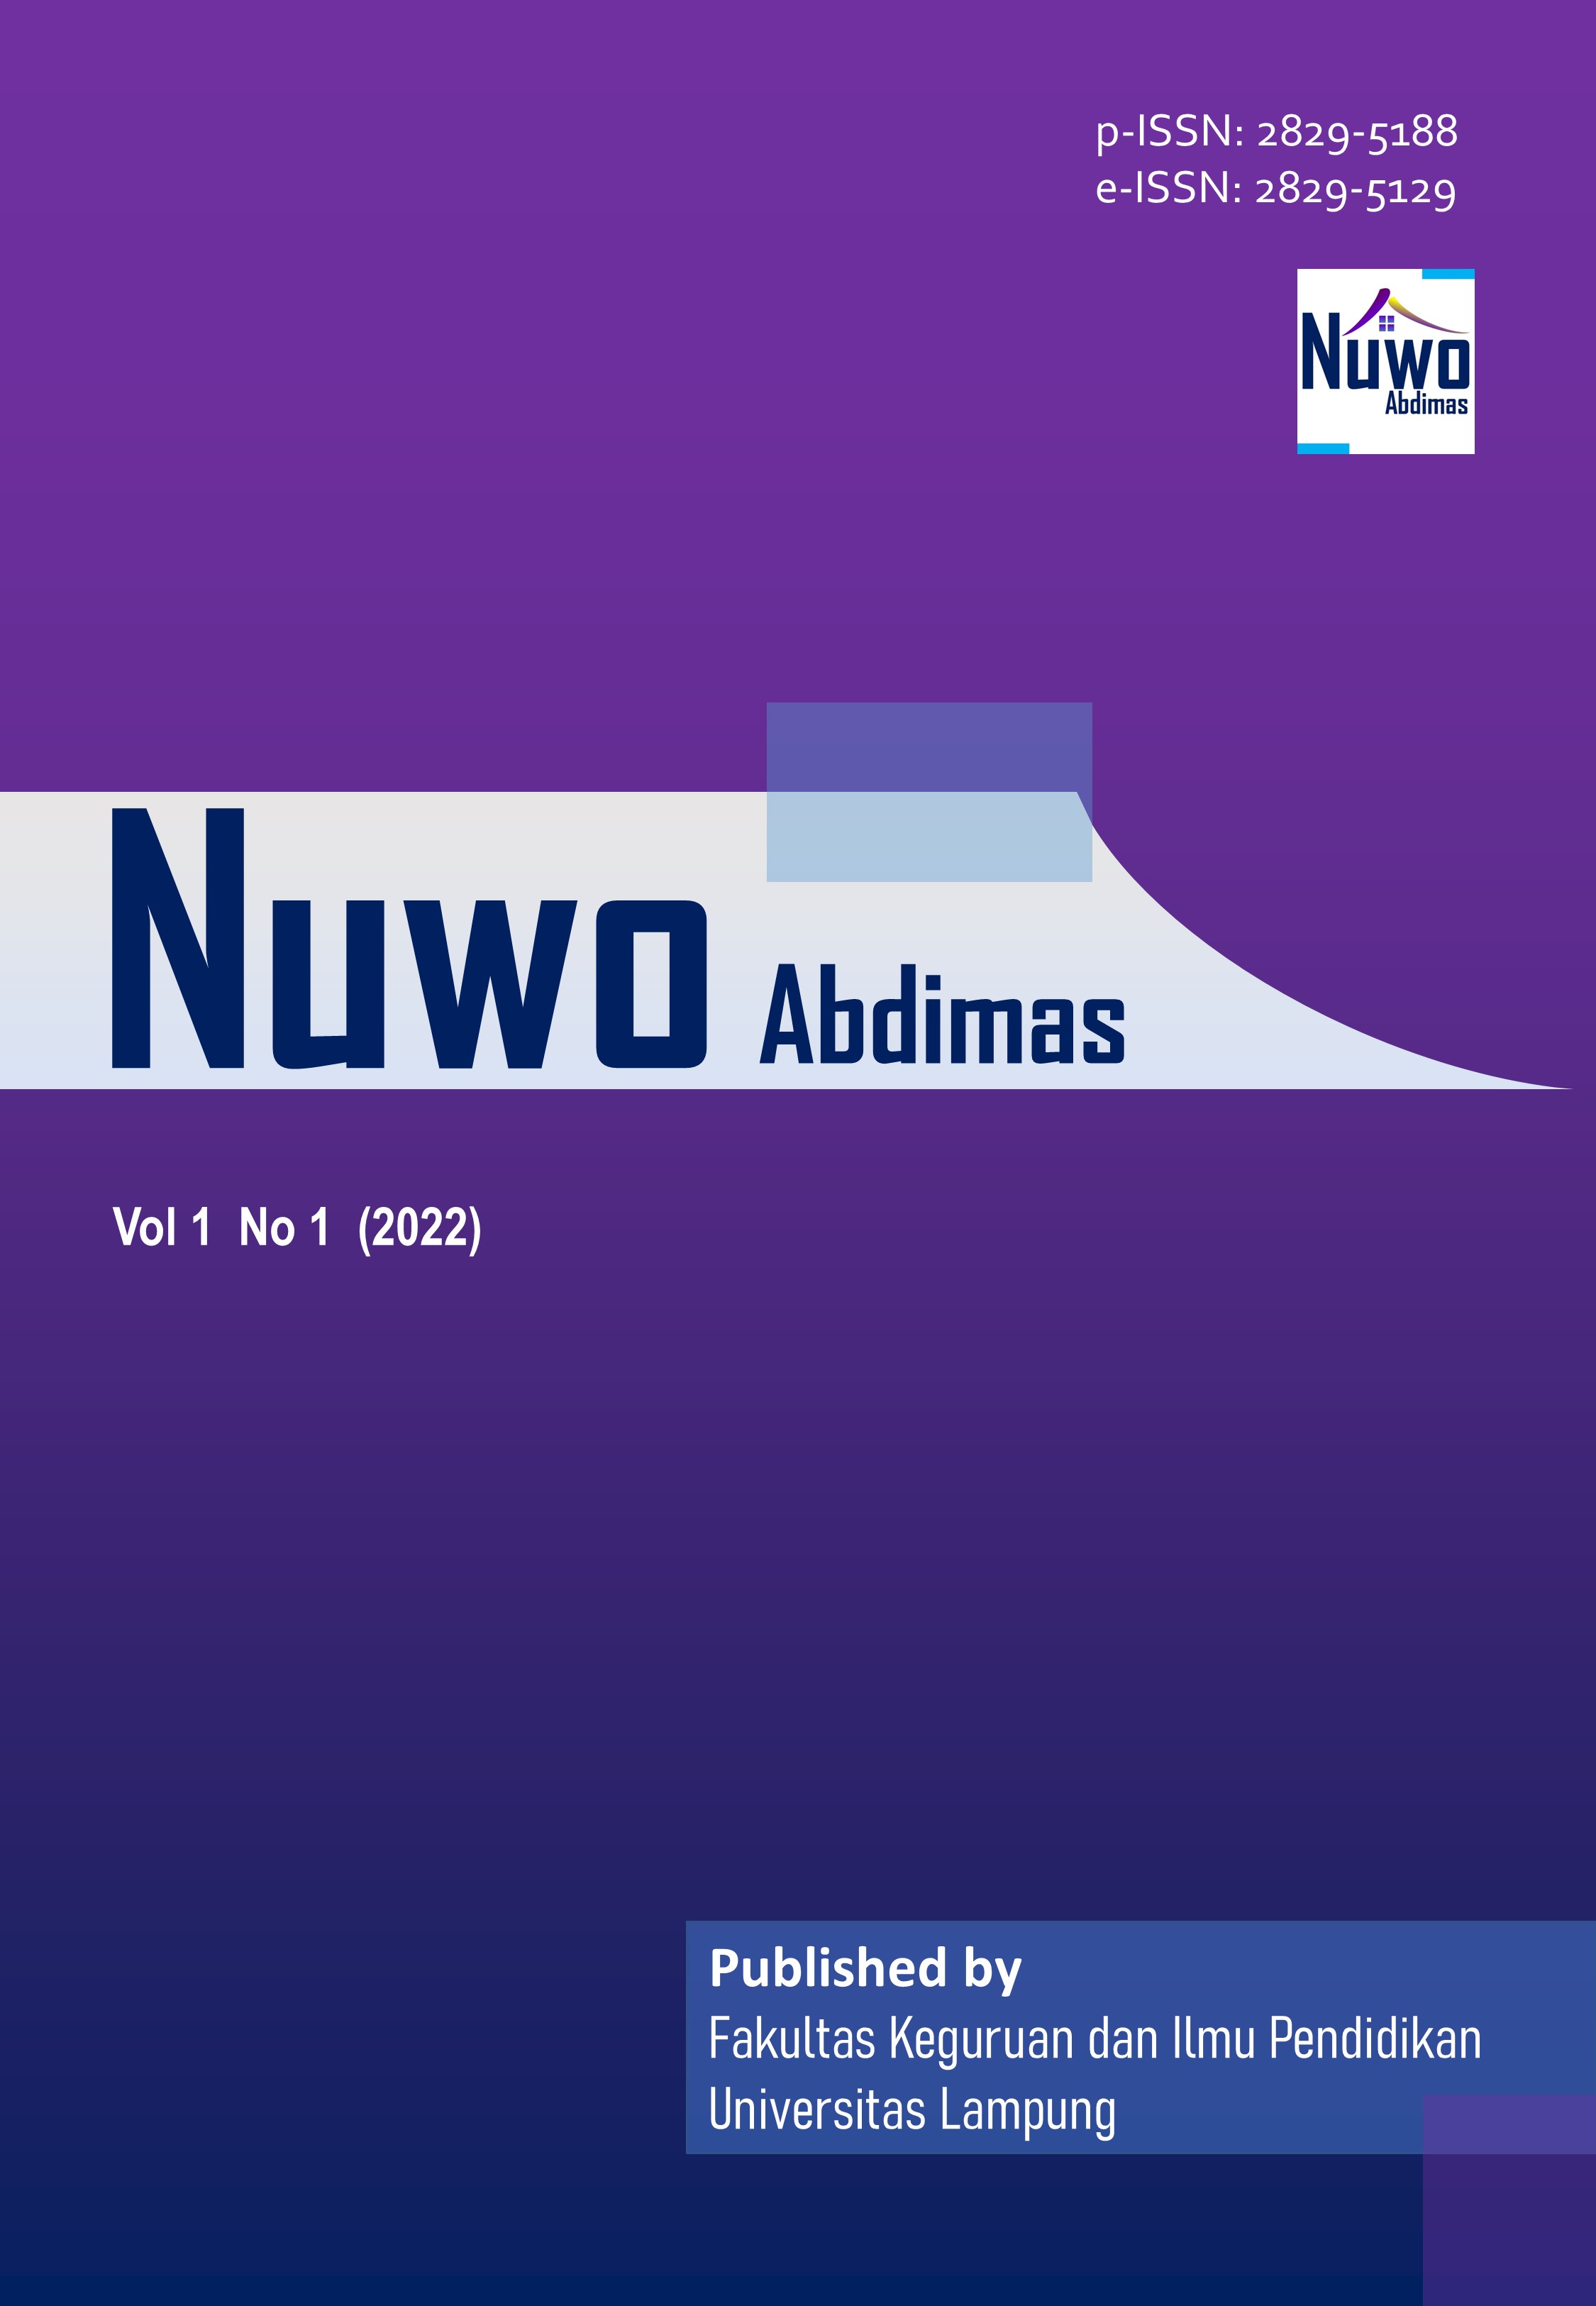 					Lihat Vol 1 No 1 (2022): Nuwo Abdimas
				